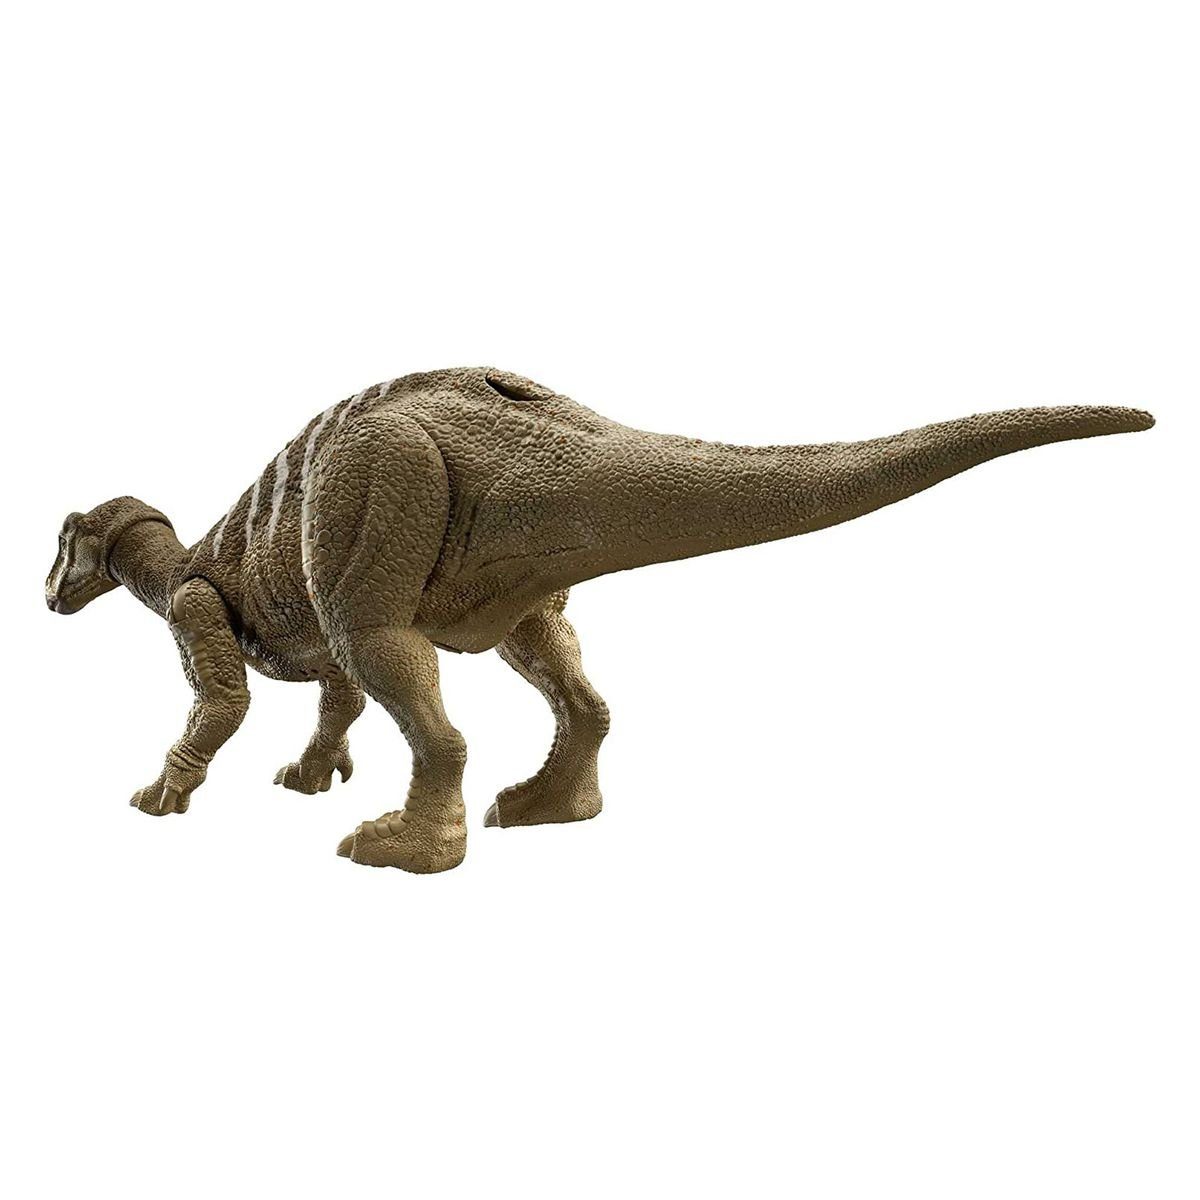 World Spielfigur - Iguanodon, Dinosaurier - Mattel® Mattel Dominion Spielfigur HDX41 - Jurassic